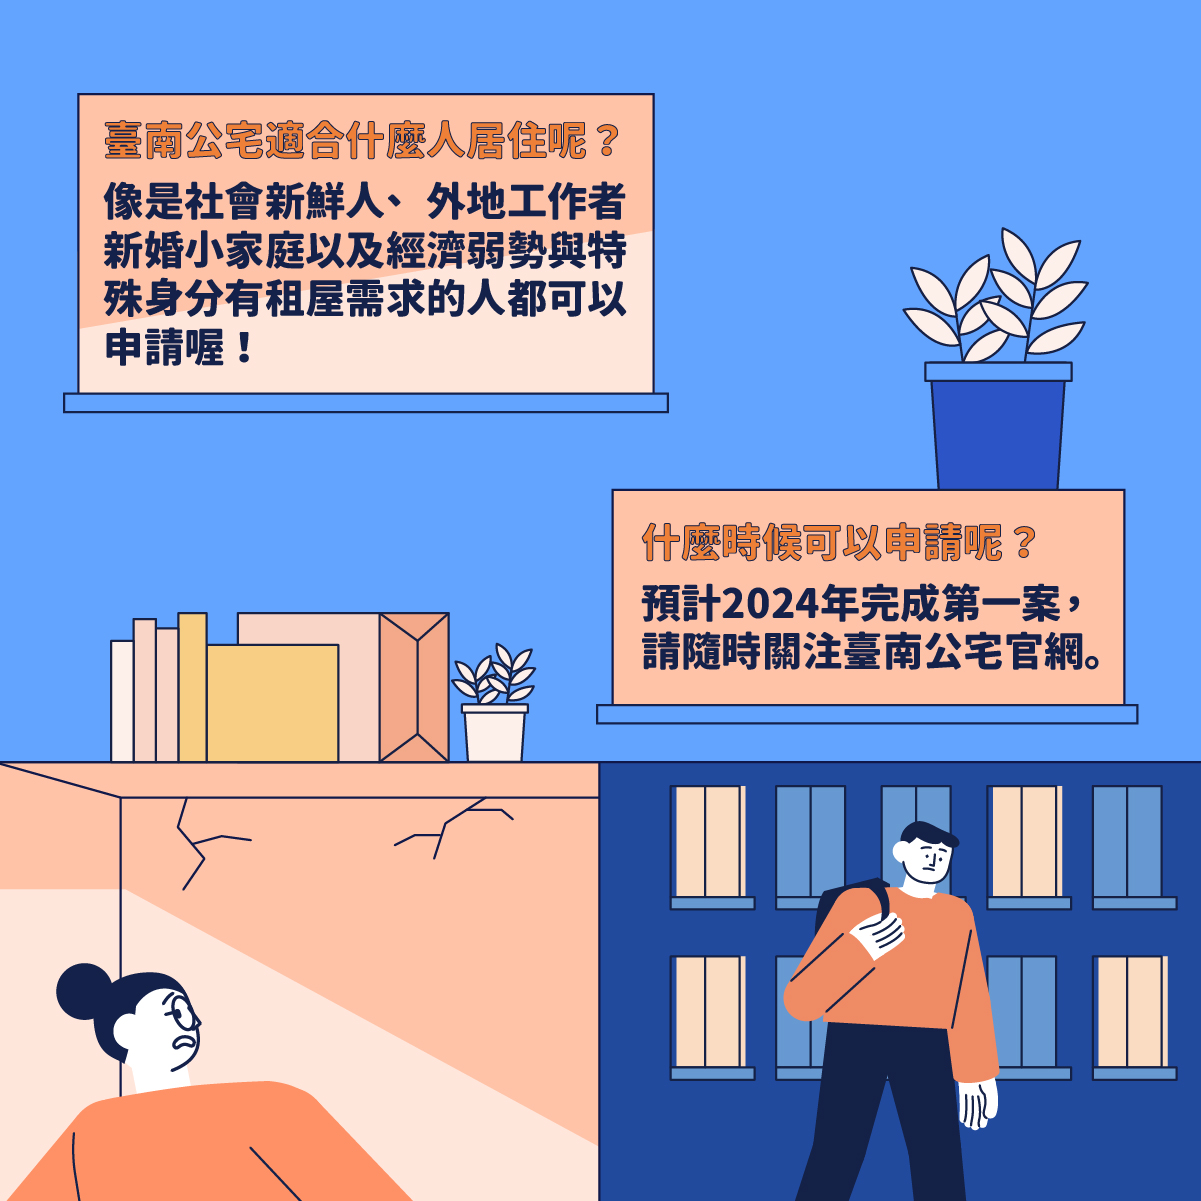 臺南公宅．成就幸福的所在，首案最快2024年完工，低於市價出租，落實居住正義